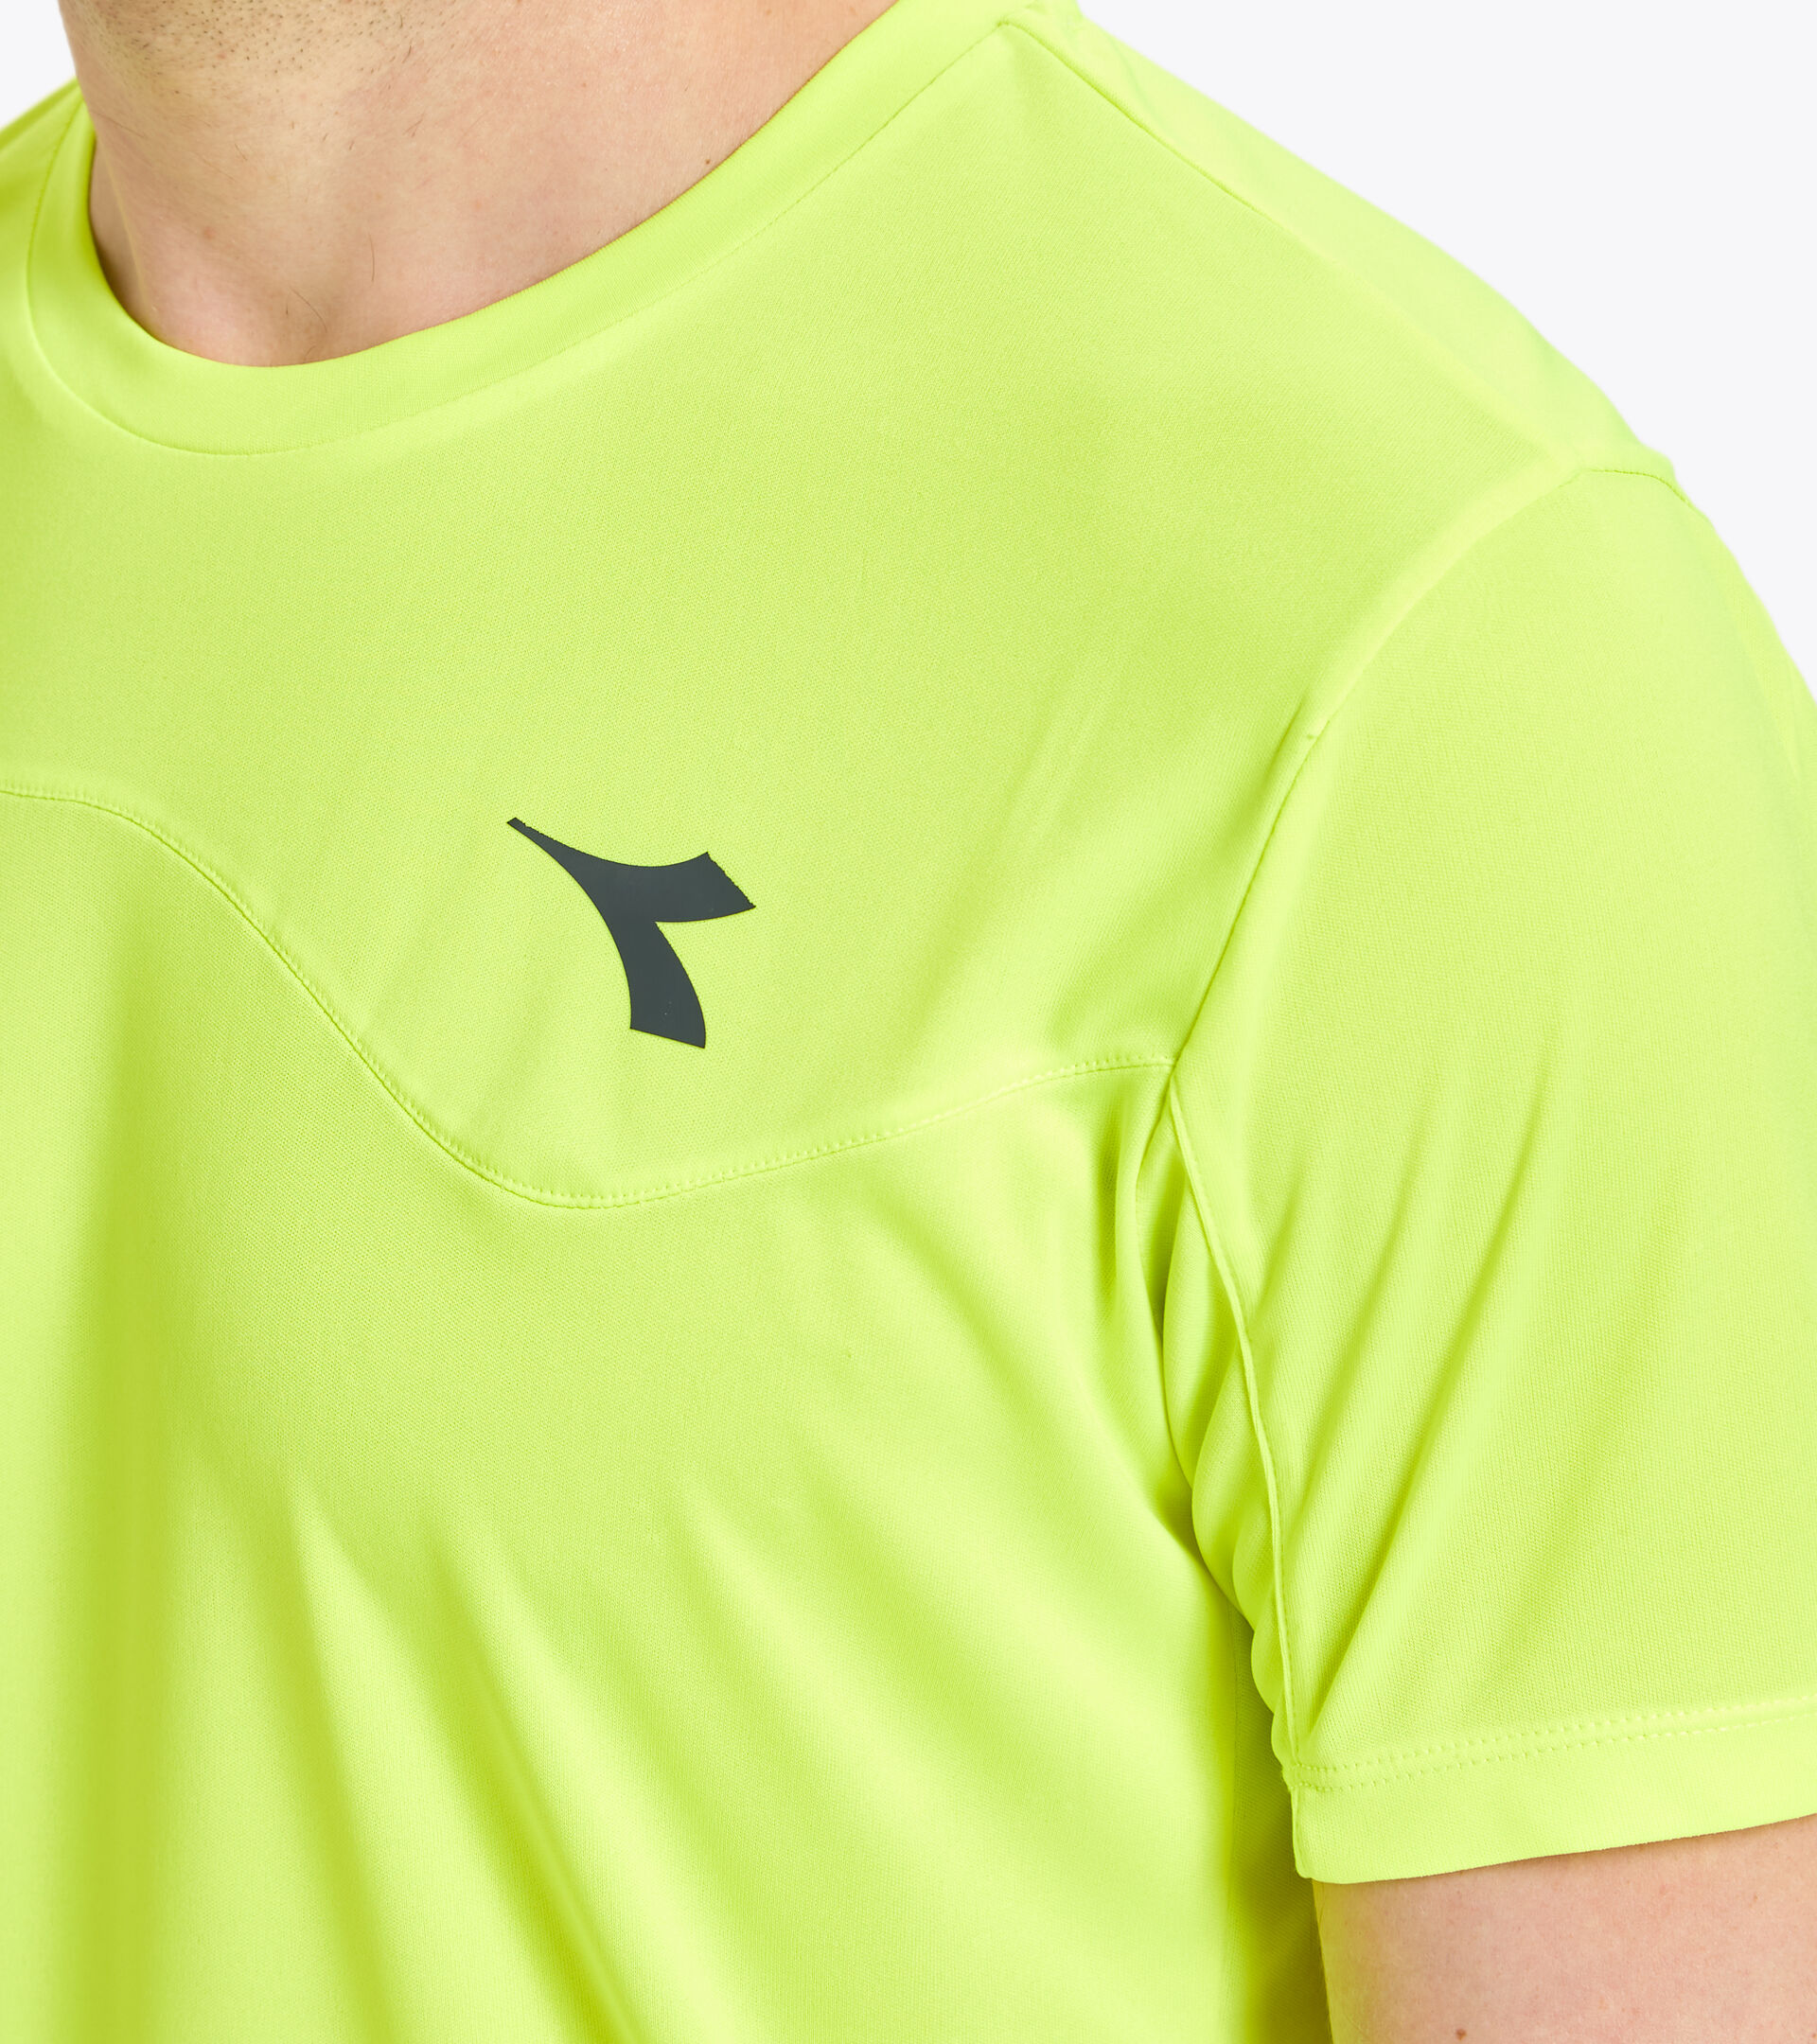 Tennis T-shirt - Men T-SHIRT TEAM FLUO YELLOW DD - Diadora